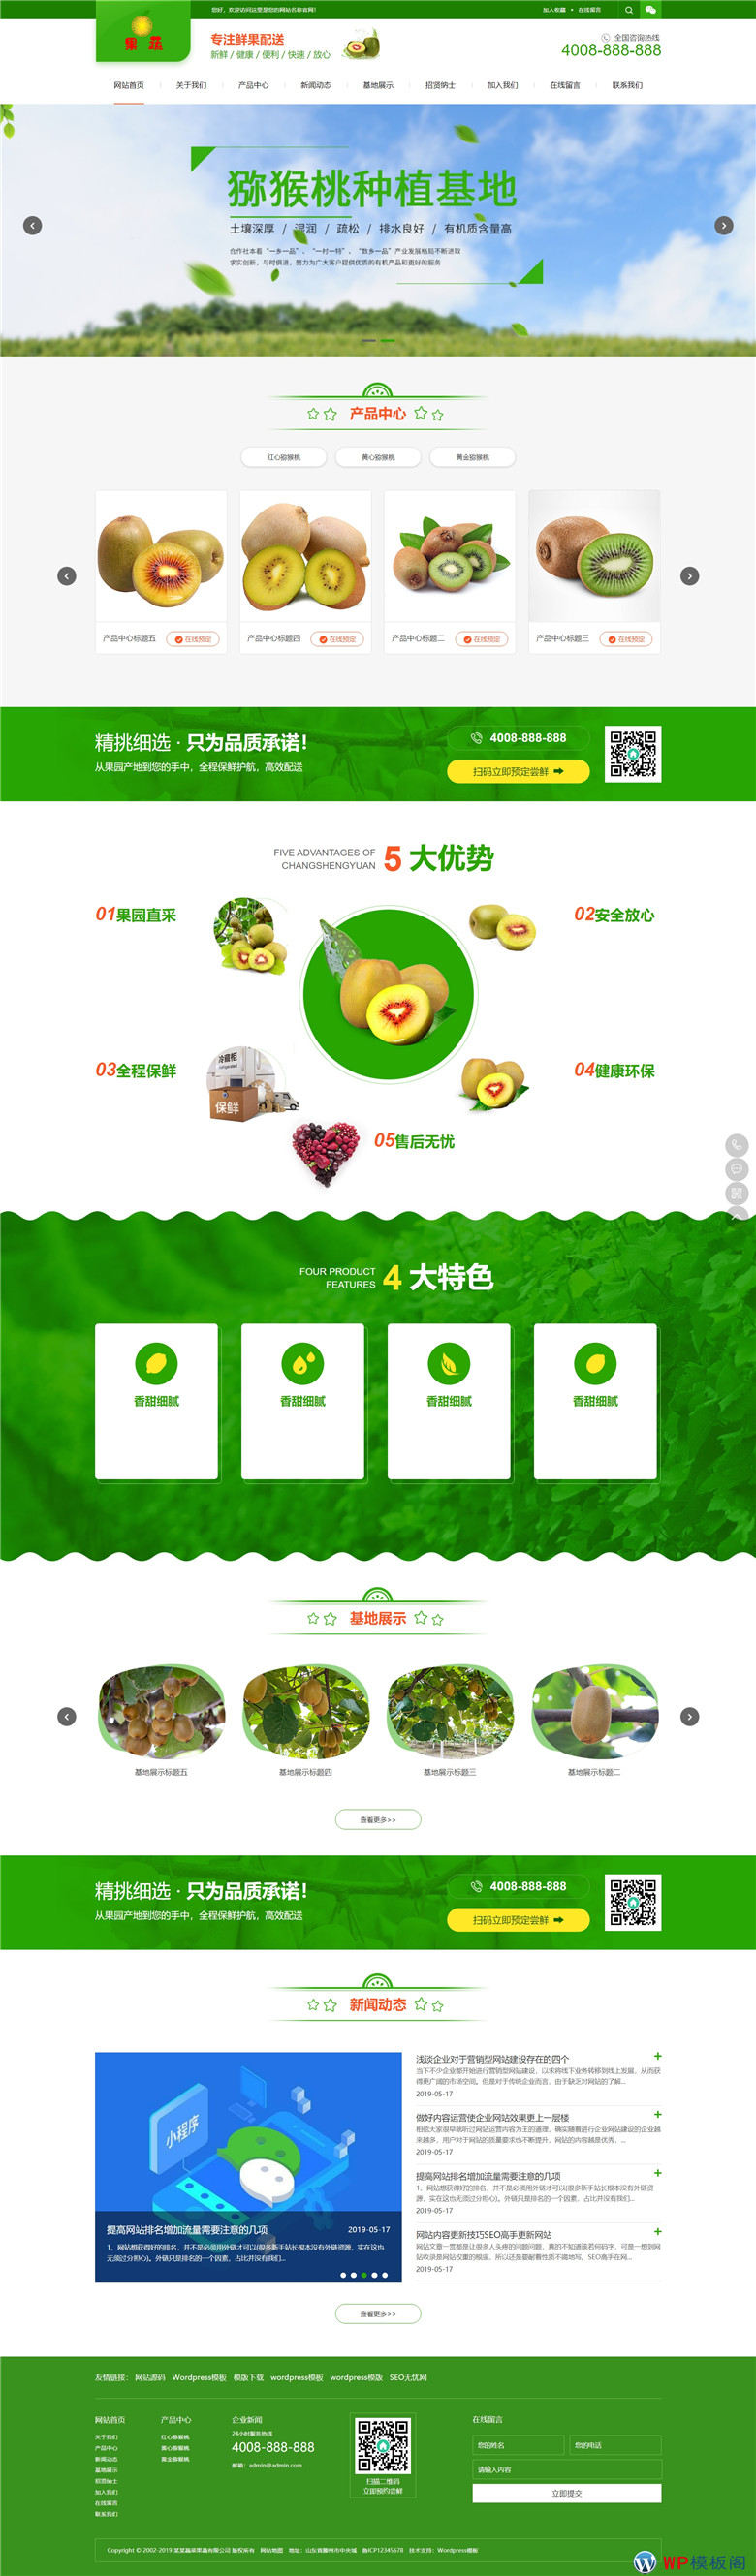 蔬菜果蔬鲜果配送绿色水果种植园网站WordPress模板(带手机端)演示图